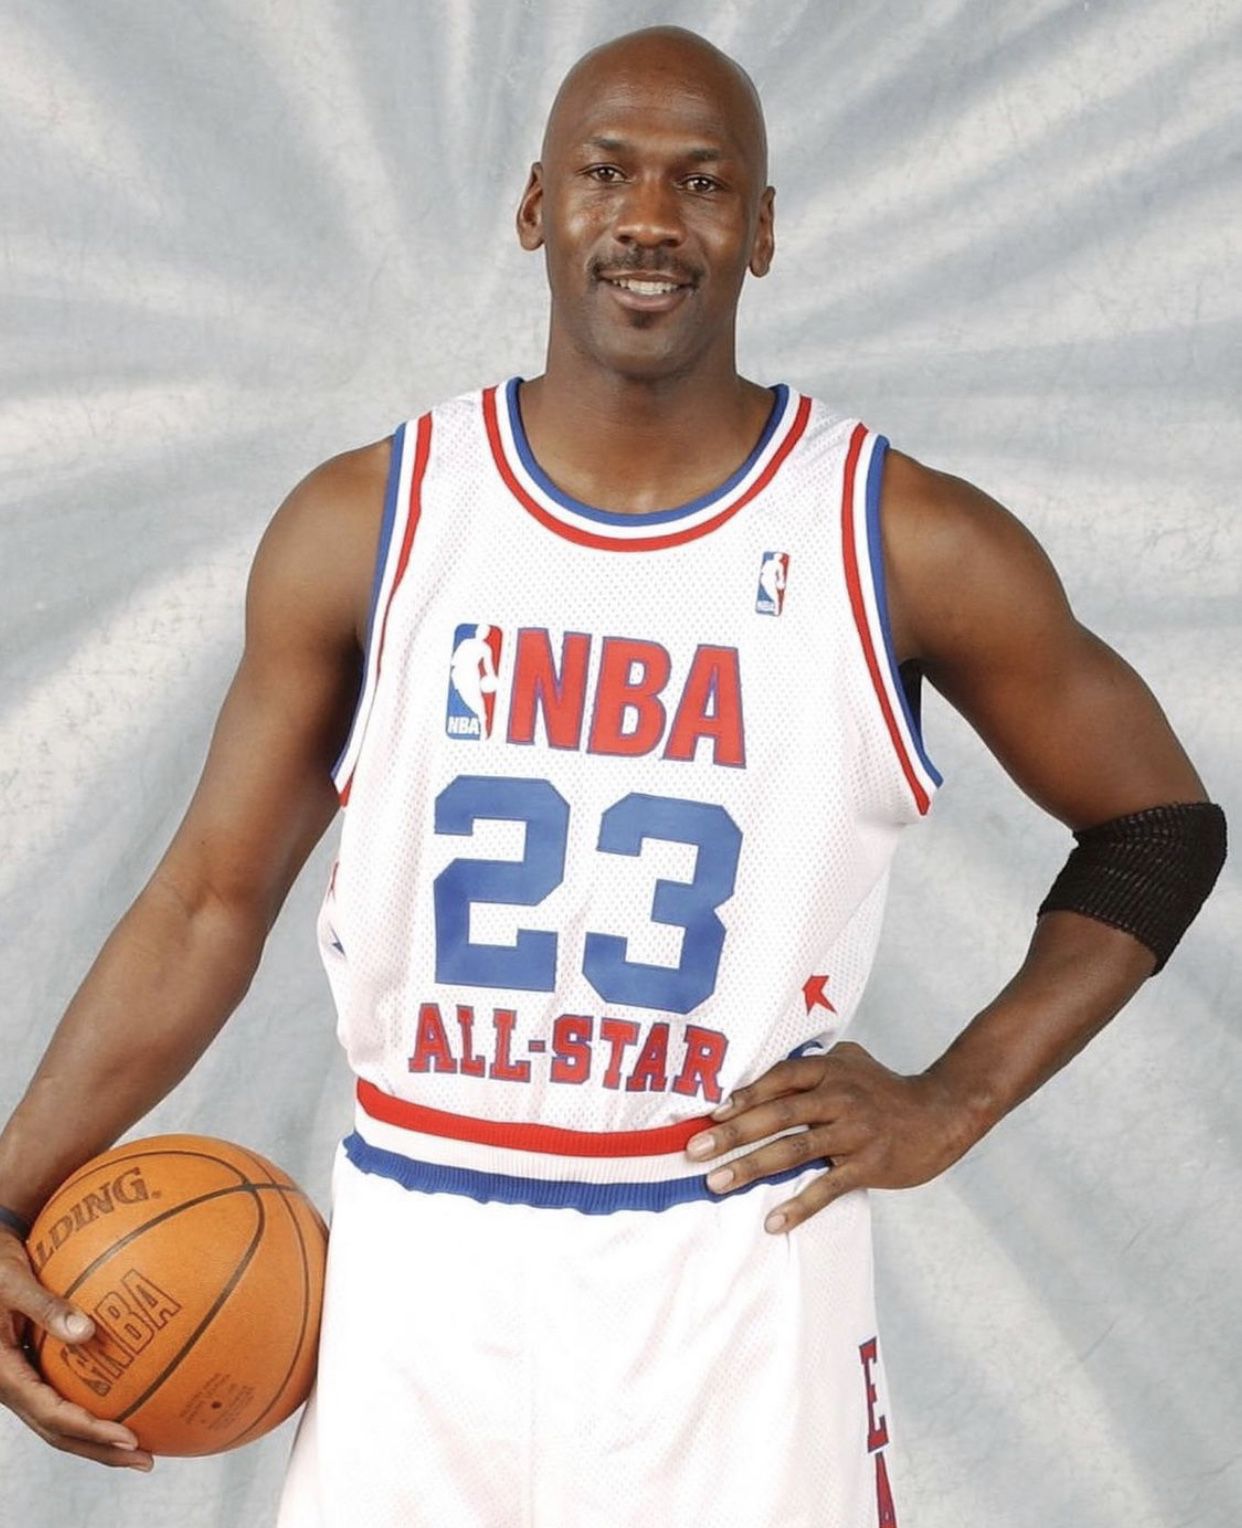 Nike Michael Jordan Washington Wizards warm up suit and Reebok